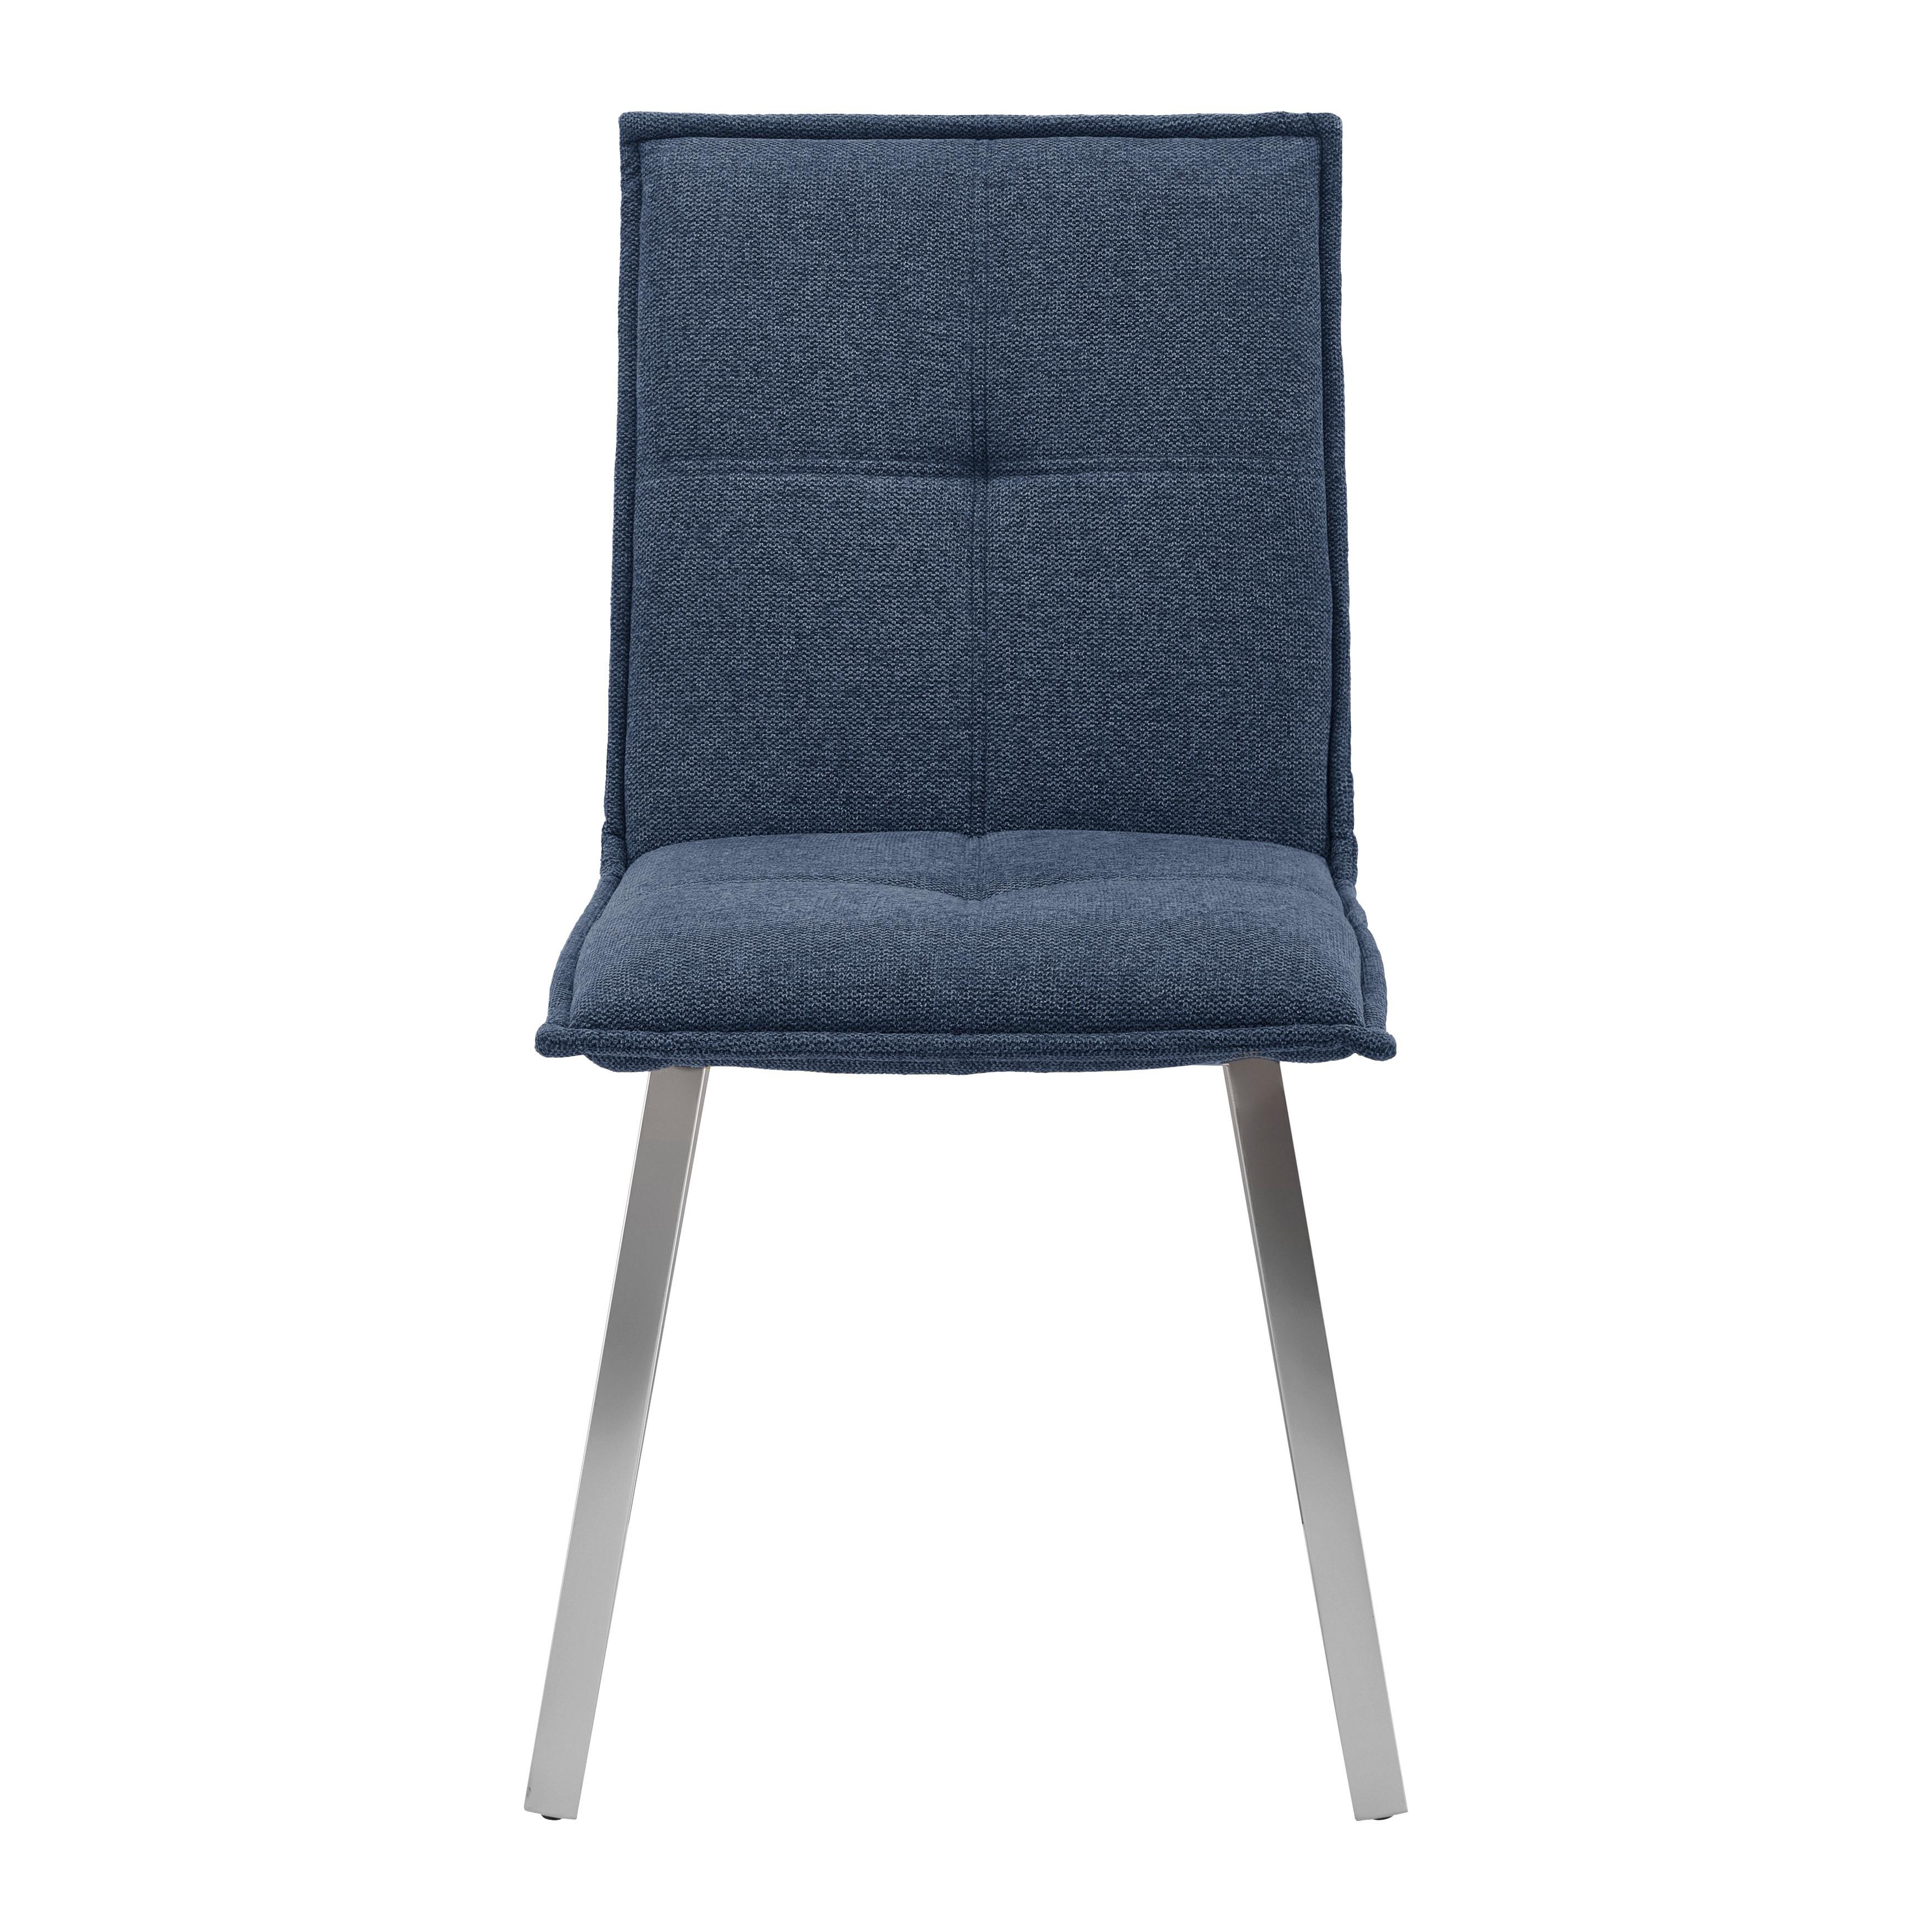 Židle Emilio Modrá - modrá/barvy nerez oceli, Moderní, kov/dřevo (46/85/55cm) - Bessagi Home